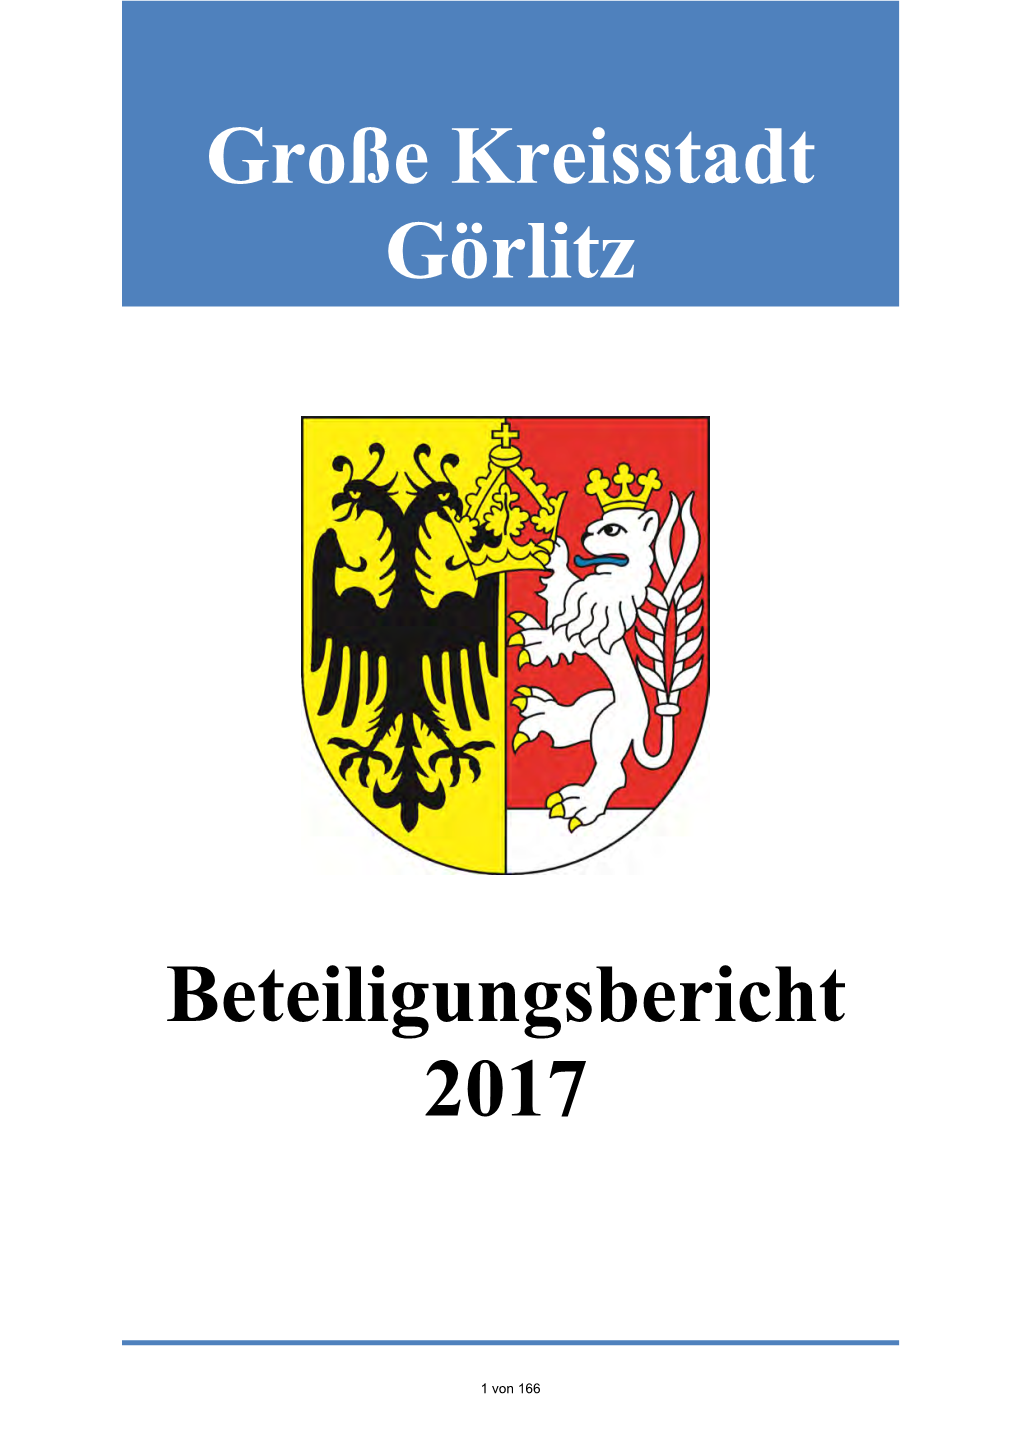 Beteiligungsbericht 2017 Große Kreisstadt Görlitz